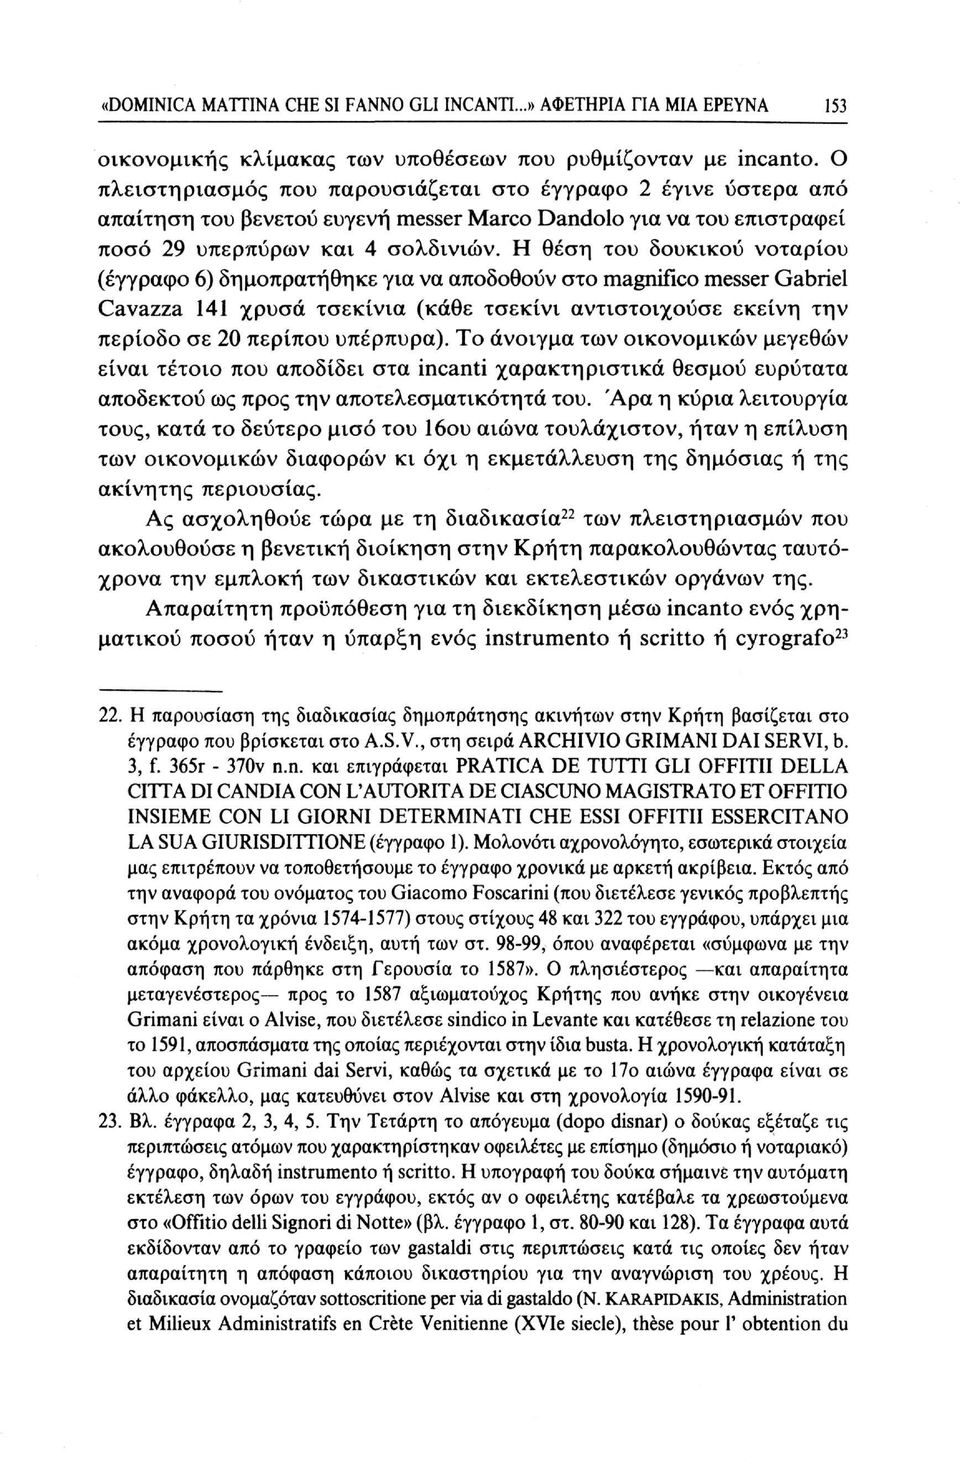 Η θέση του δουκικού νοταρίου (έγγραφο 6) δημοπρατήθηκε για να αποδοθούν στο magnifico messer Gabriel Cavazza 141 χρυσά τσεκίνια (κάθε τσεκίνι αντιστοιχούσε εκείνη την περίοδο σε 20 περίπου υπέρπυρα).